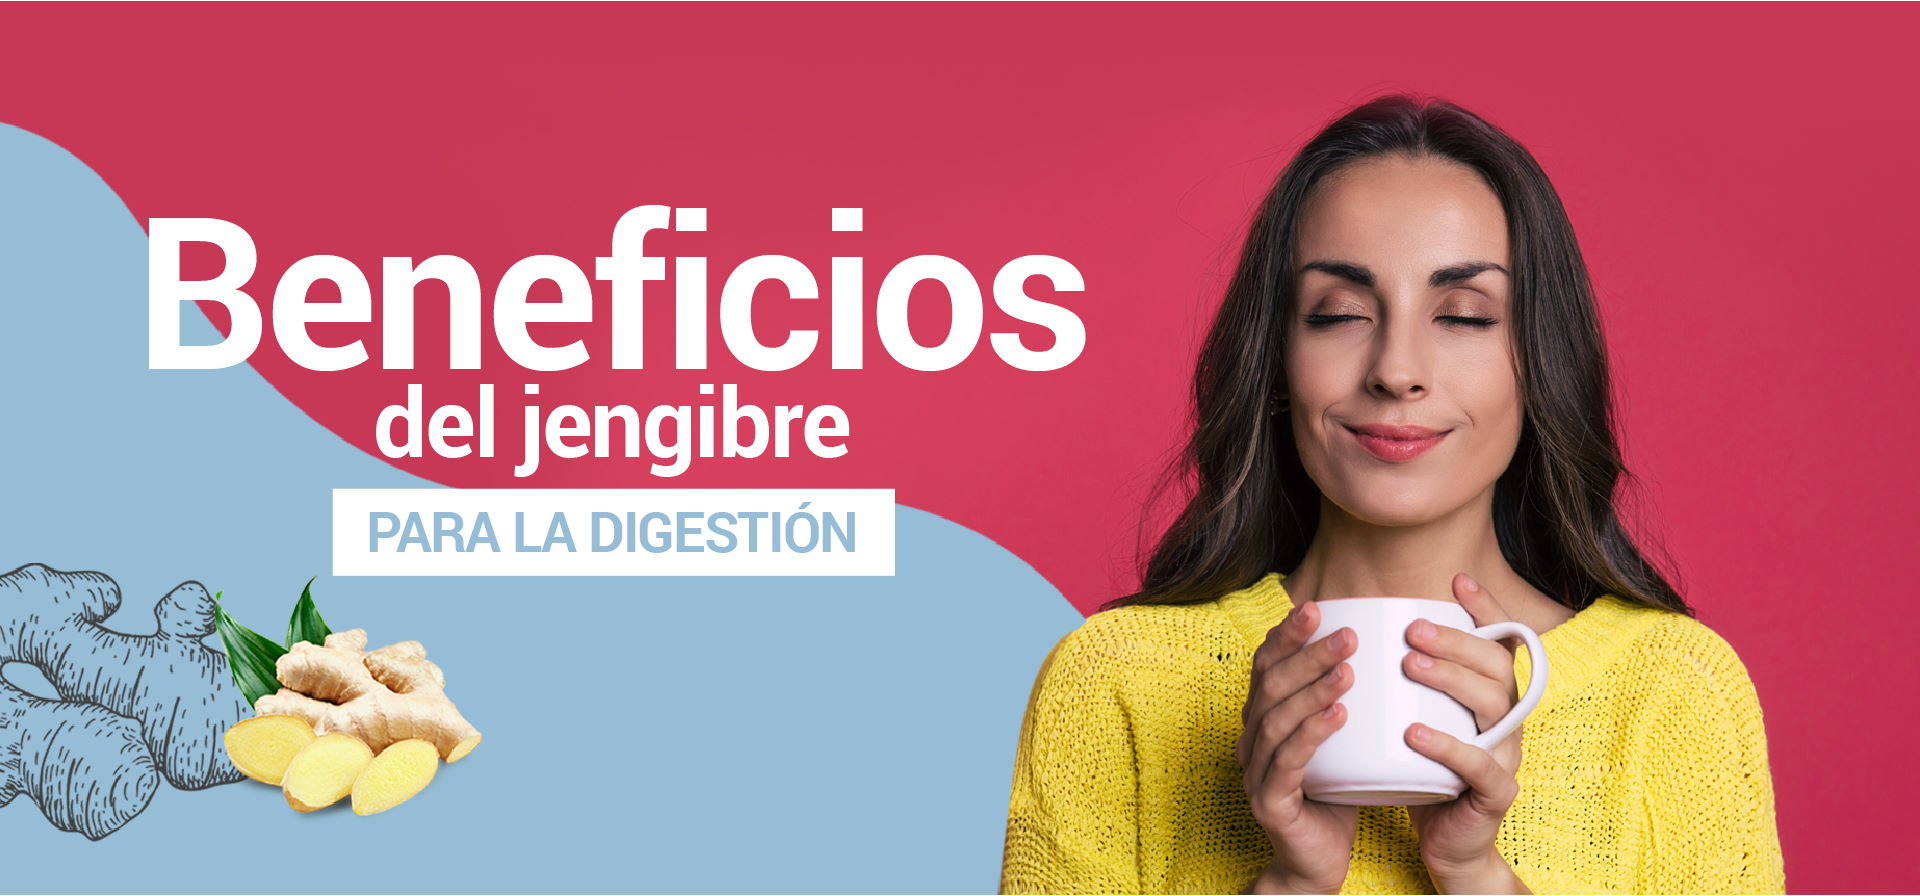 Beneficios del jengibre para la digestión